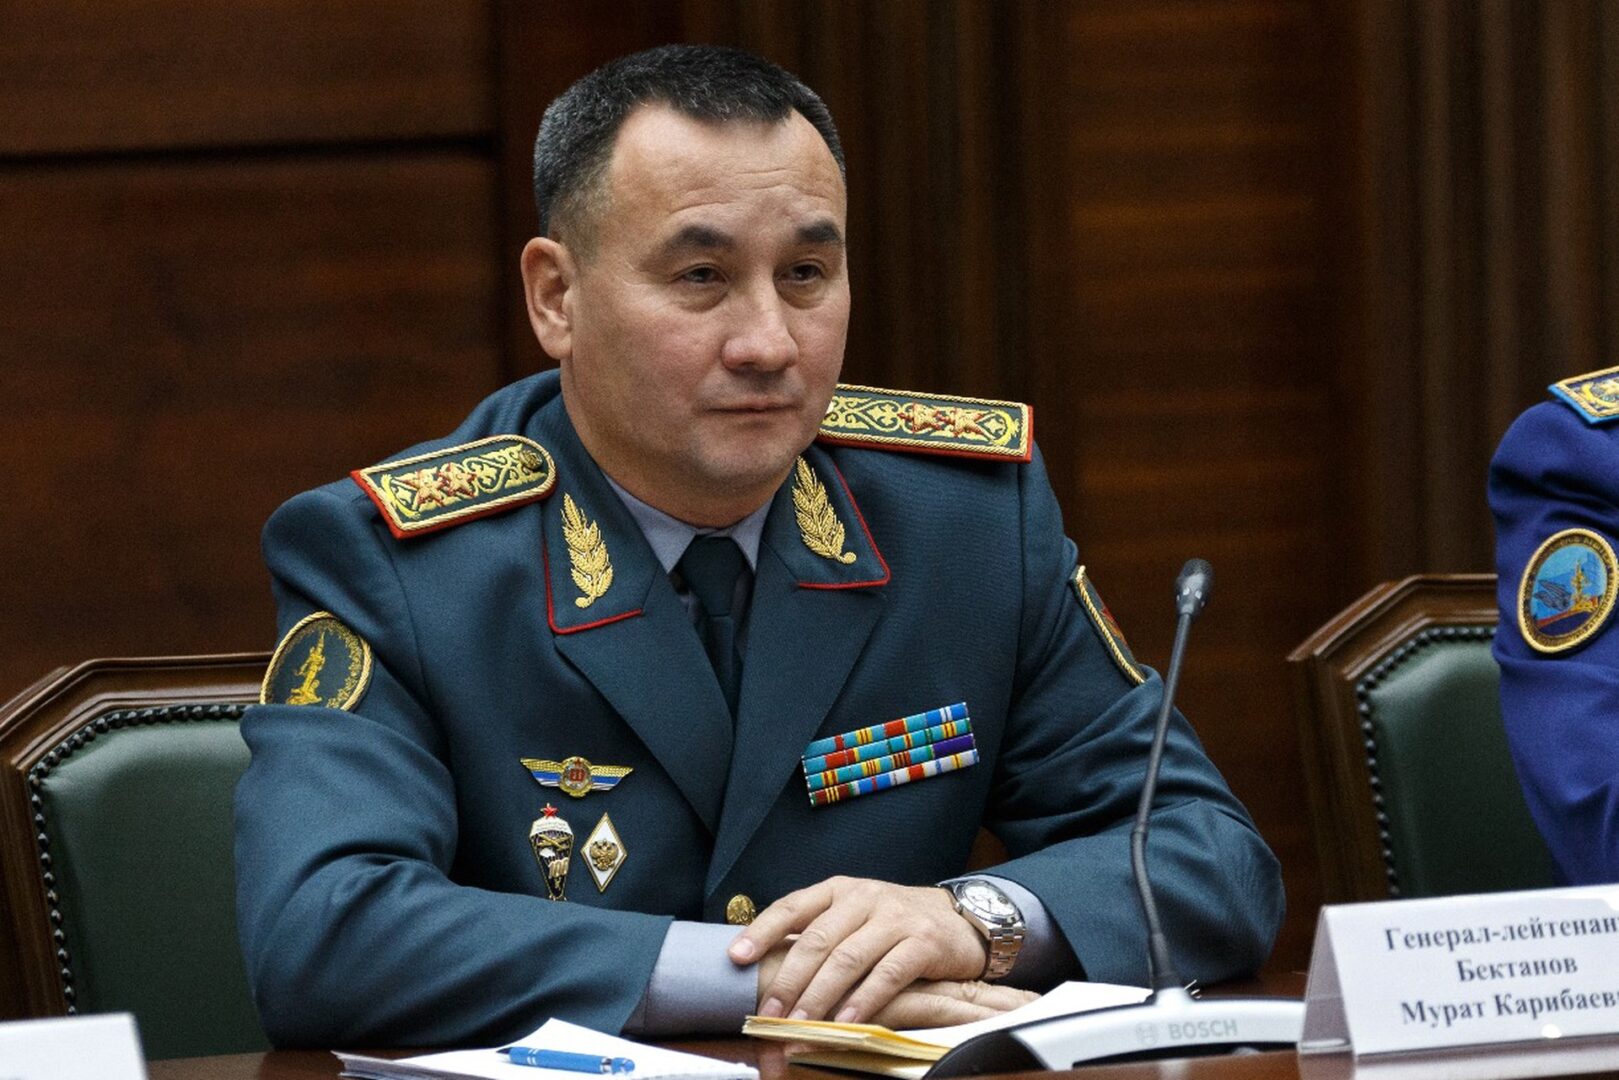 «Паркетный генерал» и дело с «политическим выхлопом»? Как судили экс-министра обороны Казахстана